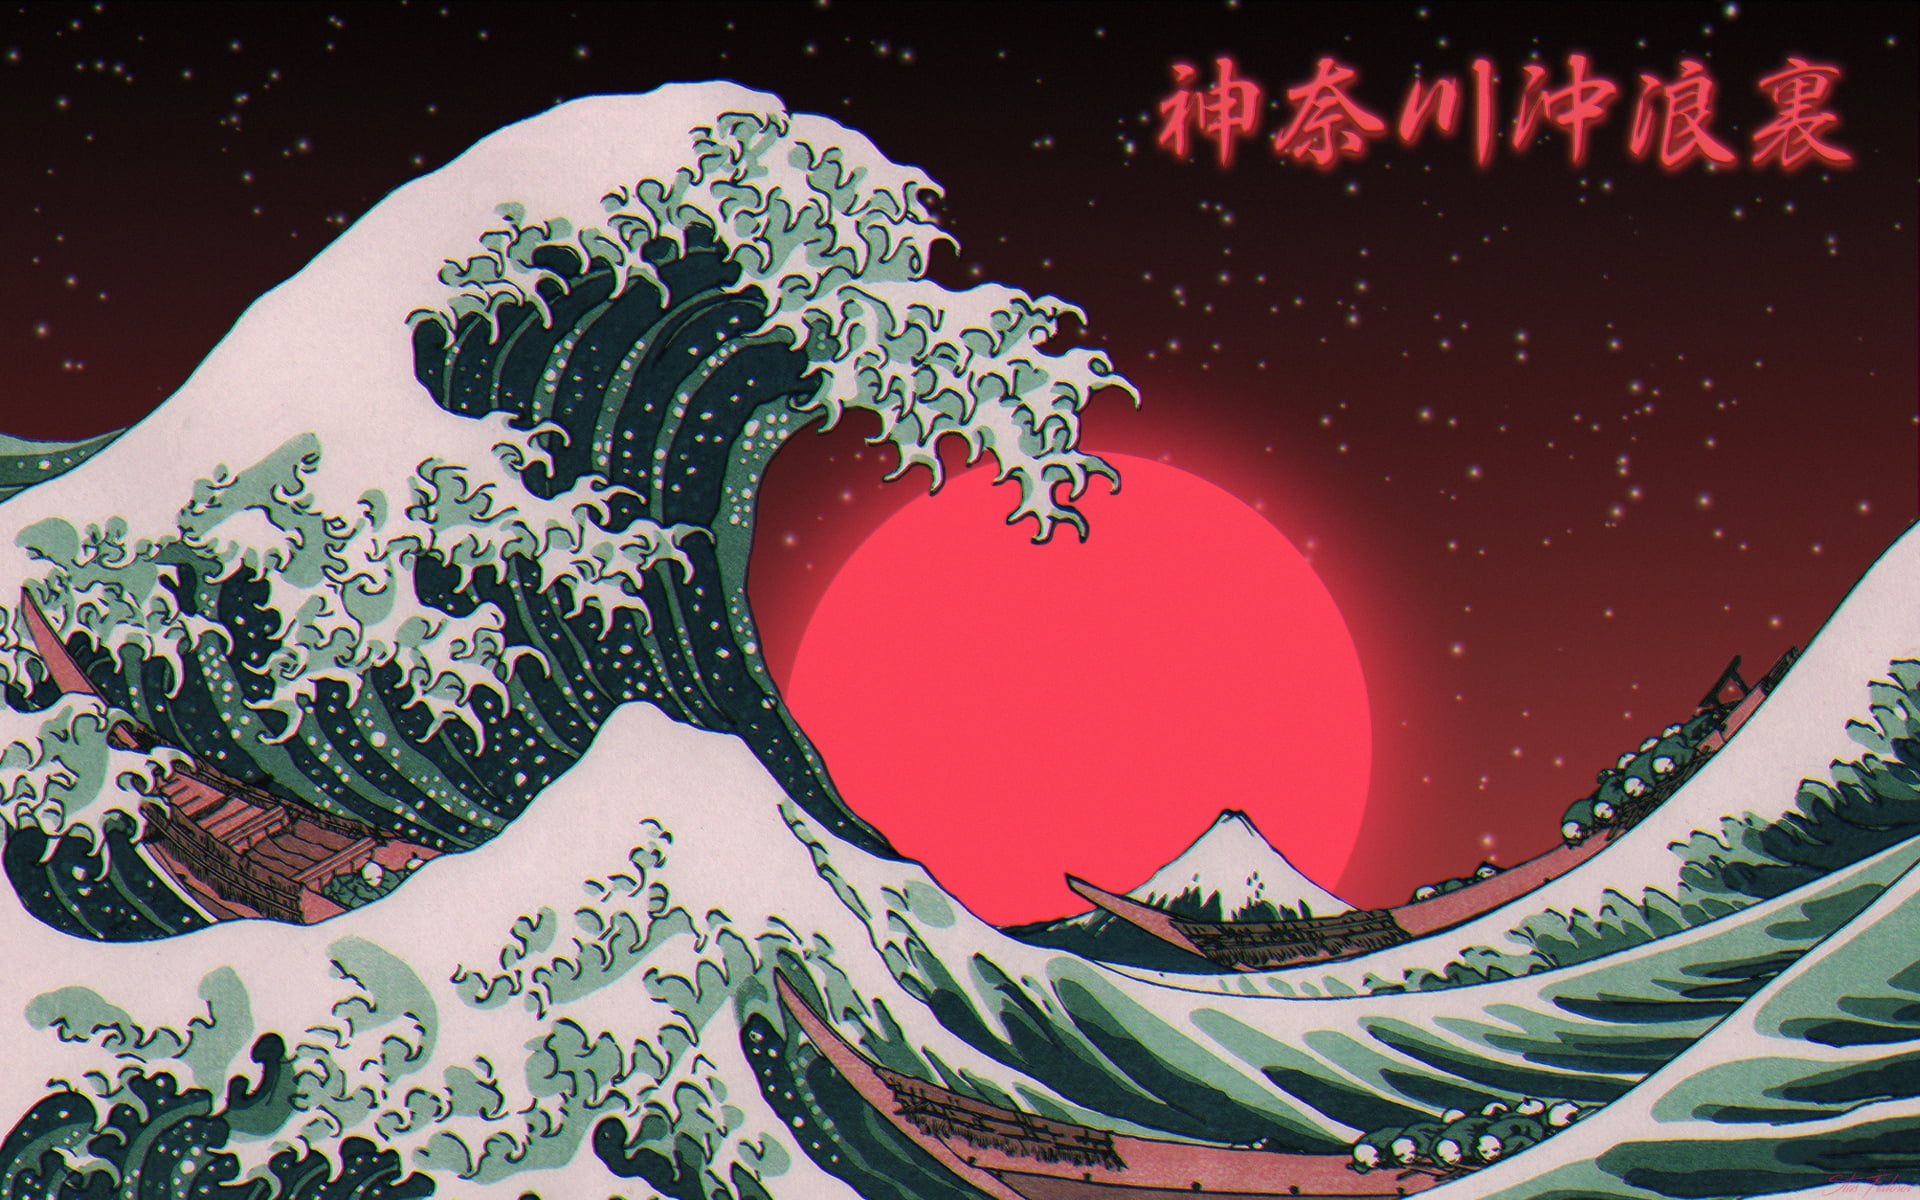 1920x1200 Great Wave off Kanagawa digital art #typography #sea #Photoshop The Great Wave off Kanagawa #1080P #w&acirc;&#128;&brvbar; | Desktop wallpaper art, Vaporwave wallpaper, Waves wallpaper